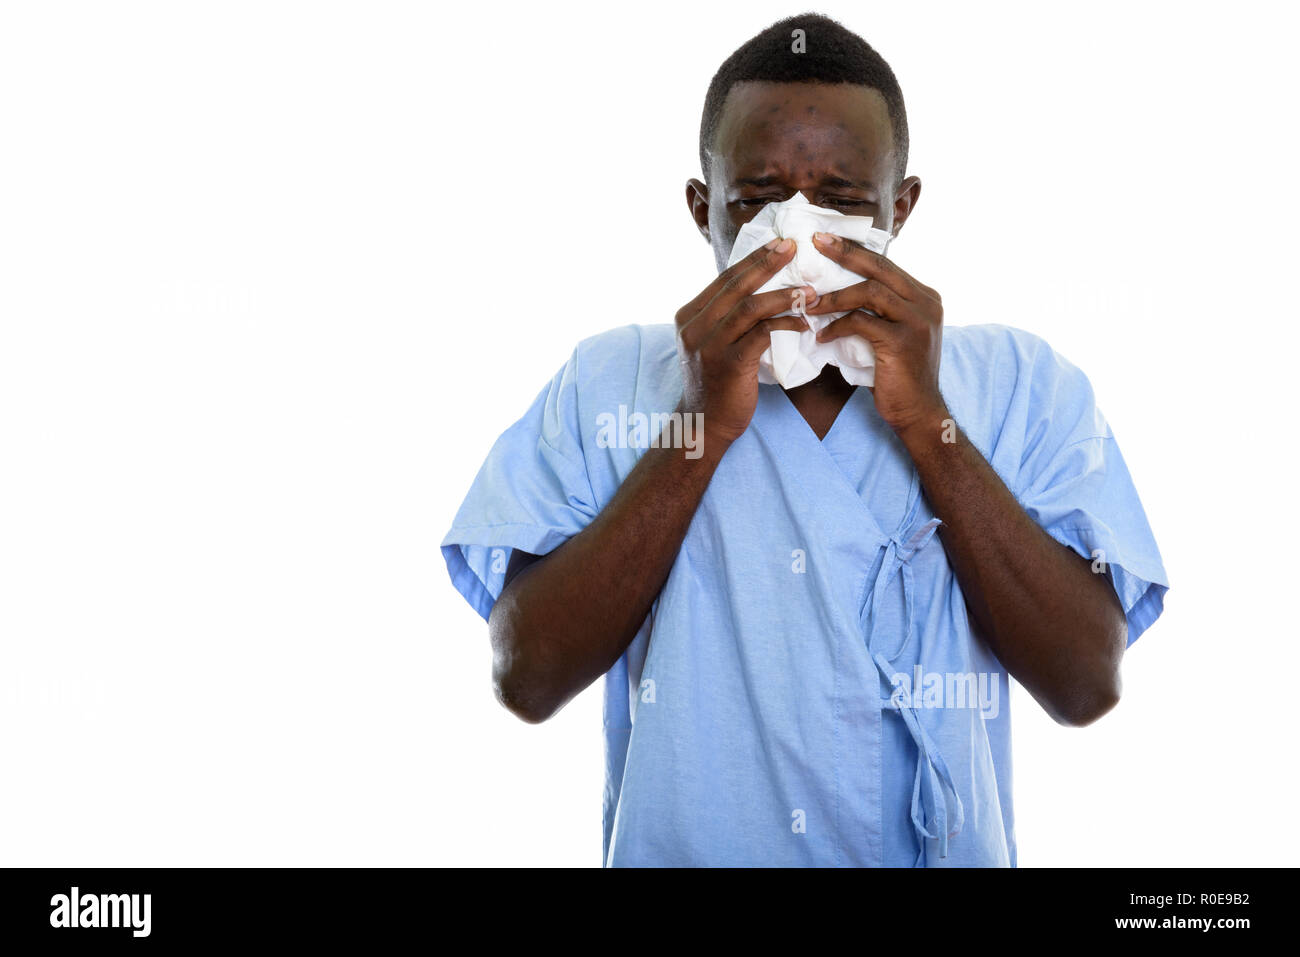 Foto de estudio de la joven paciente hombre negro africano sopla su nariz Foto de stock